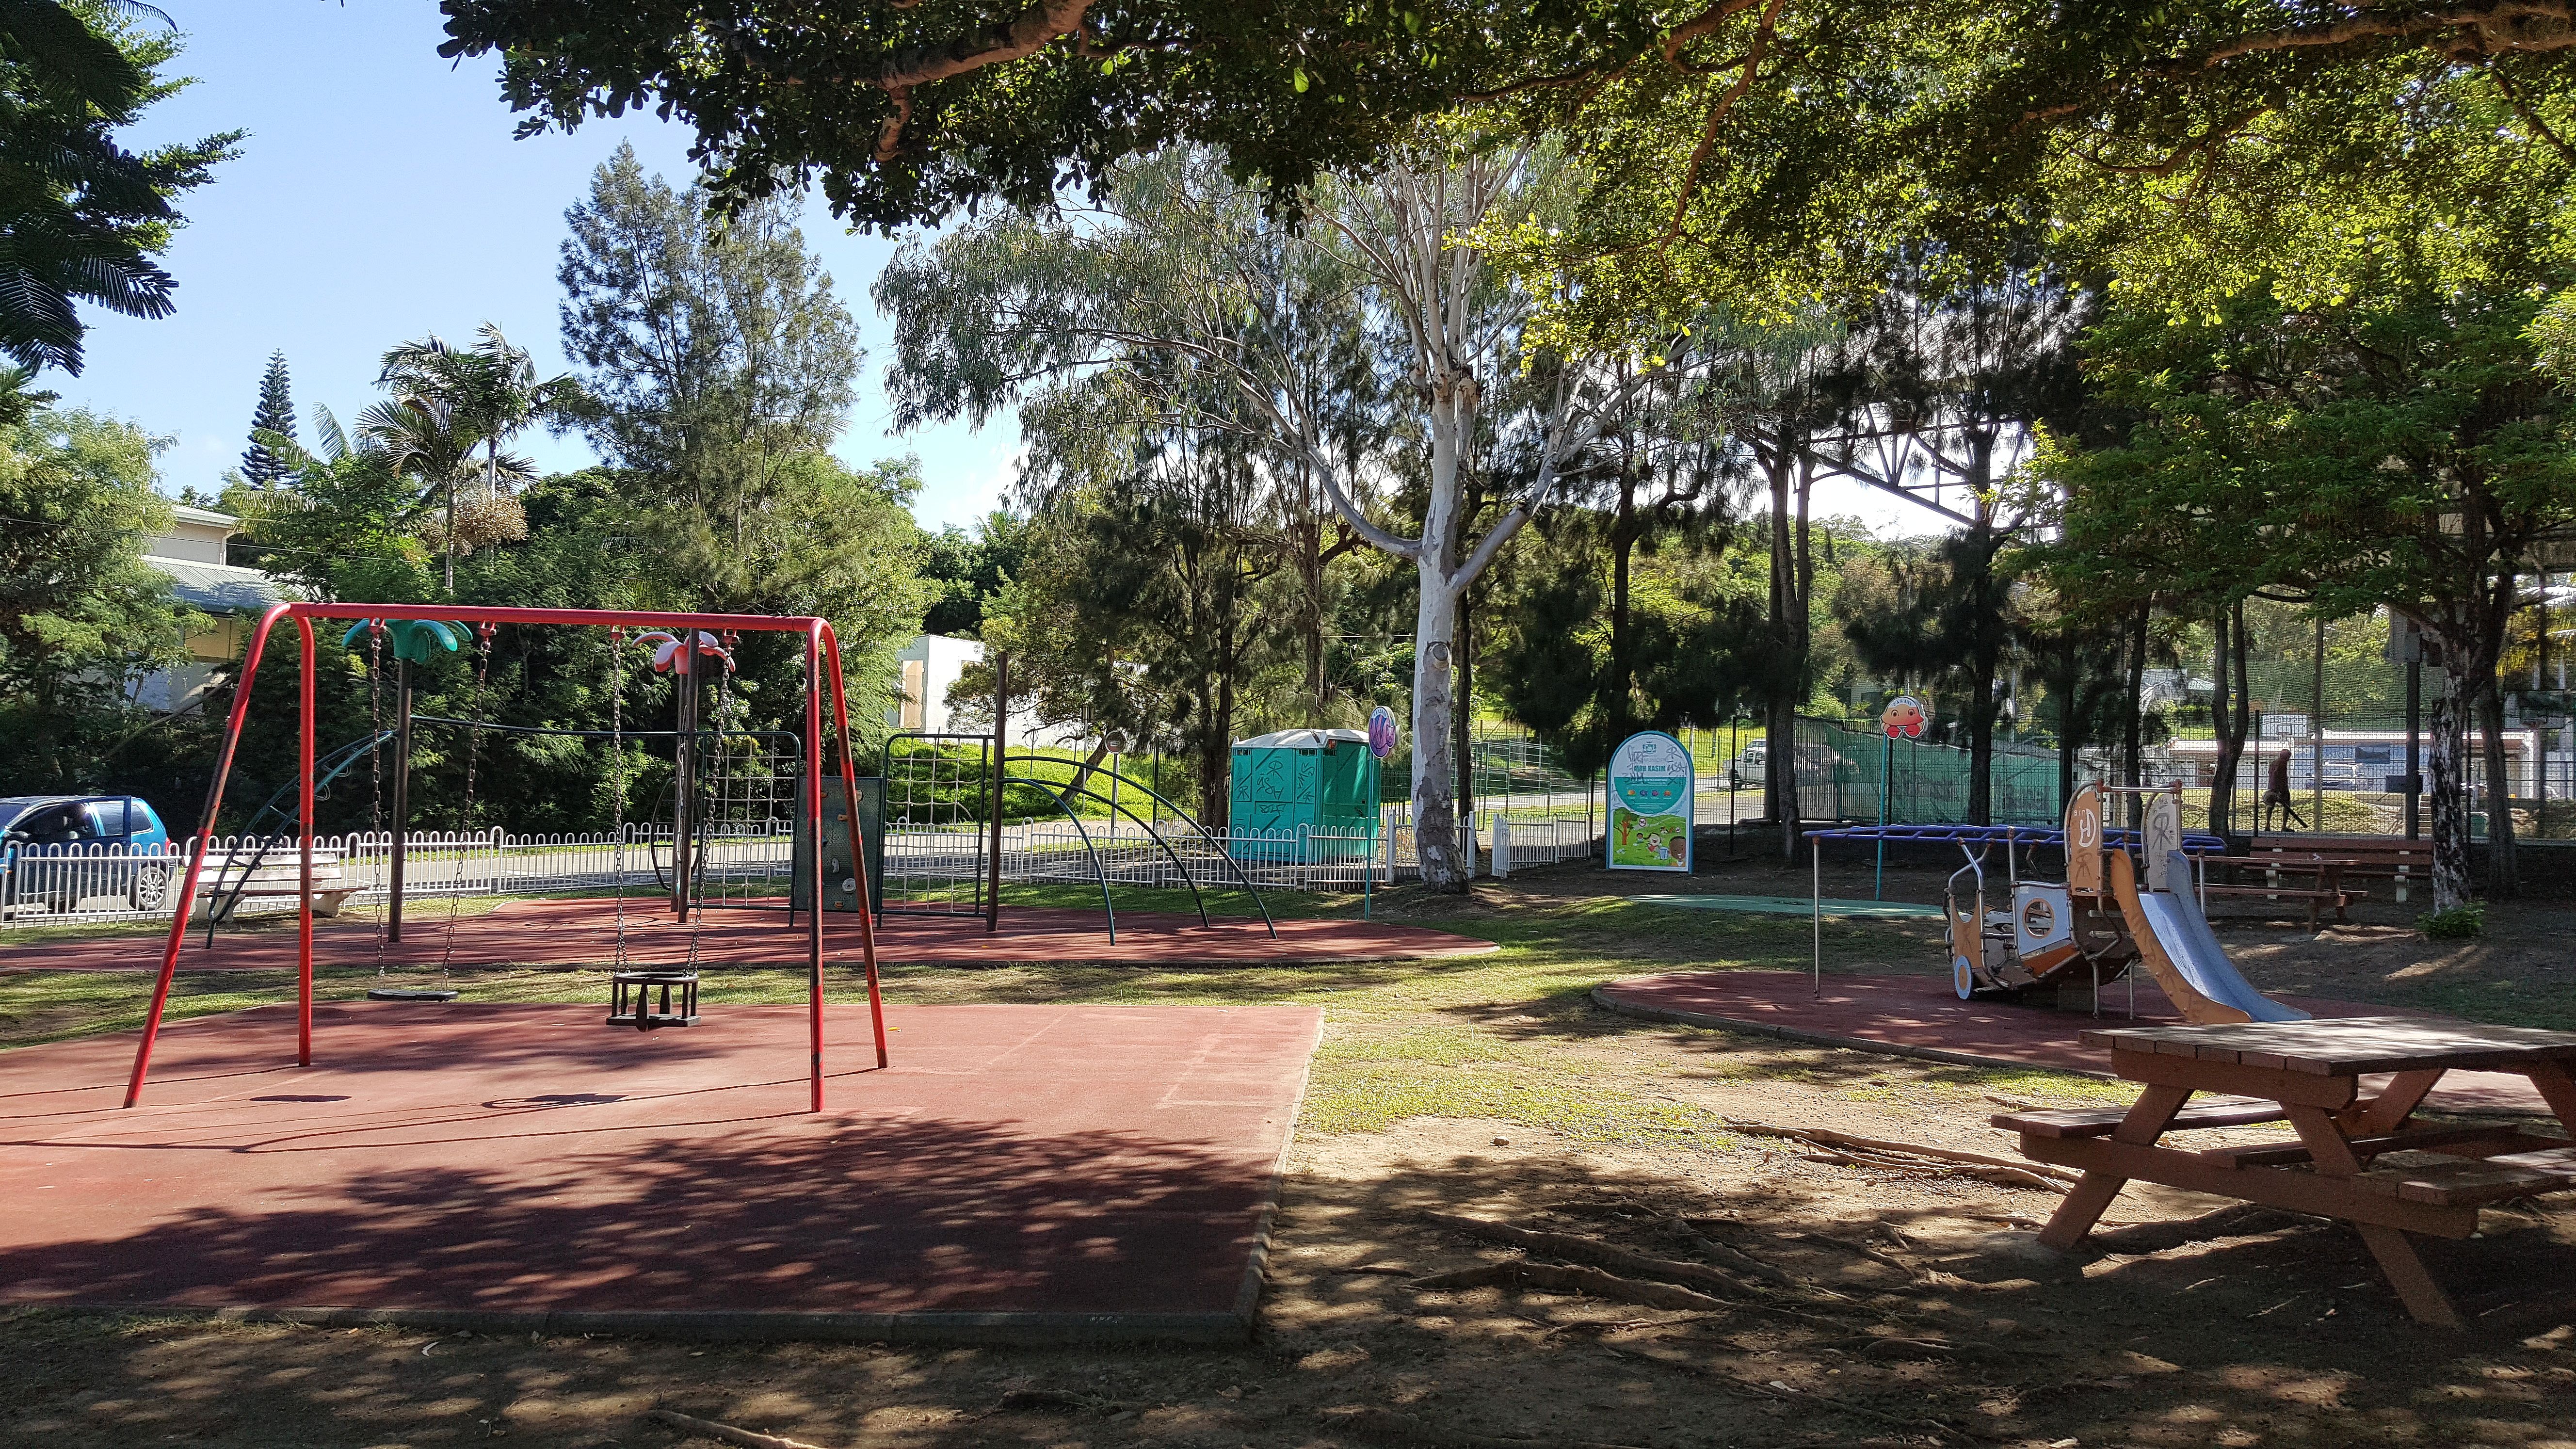 Le parc de jeux pour enfants Moh Kasim se trouve  à côté du complexe sportif Mélissa Delaveuve.